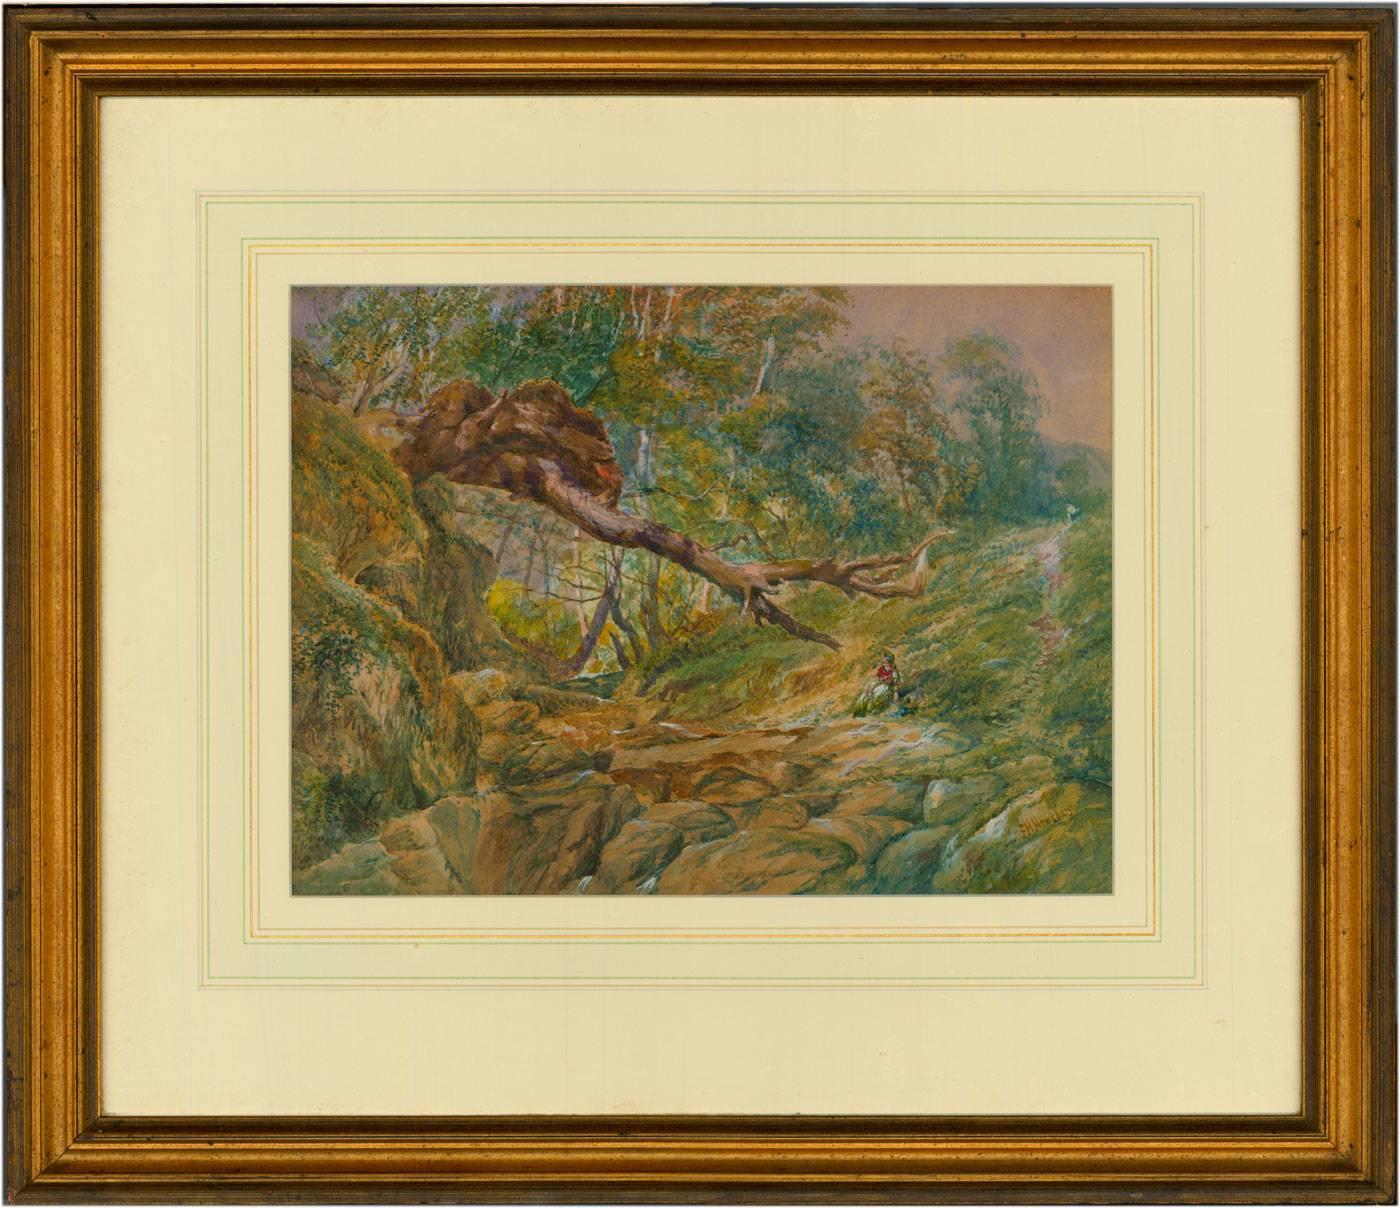 Ein signiertes viktorianisches Aquarell aus dem 19. Jahrhundert von Frederick Henry Henshaw (1807-1891), das eine Figur in einer Waldlandschaft zeigt. Gemalt in Aquarell mit Körperfarbe, präsentiert in einem Washline-Passepartout und Goldrahmen.